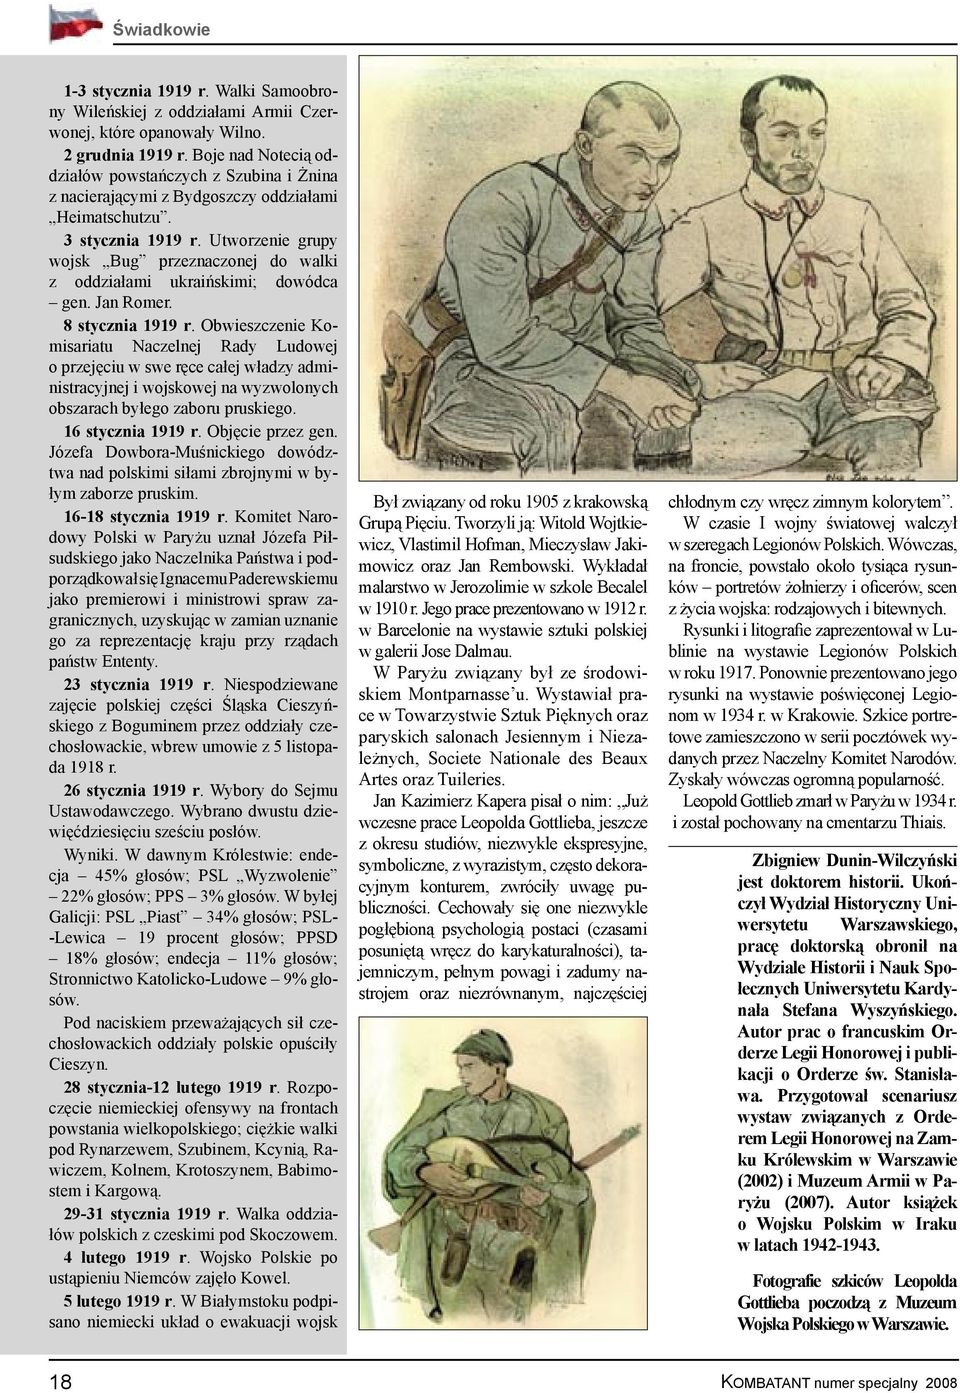 Utworzenie grupy wojsk Bug przeznaczonej do walki z oddziałami ukraińskimi; dowódca gen. Jan Romer. 8 stycznia 1919 r.